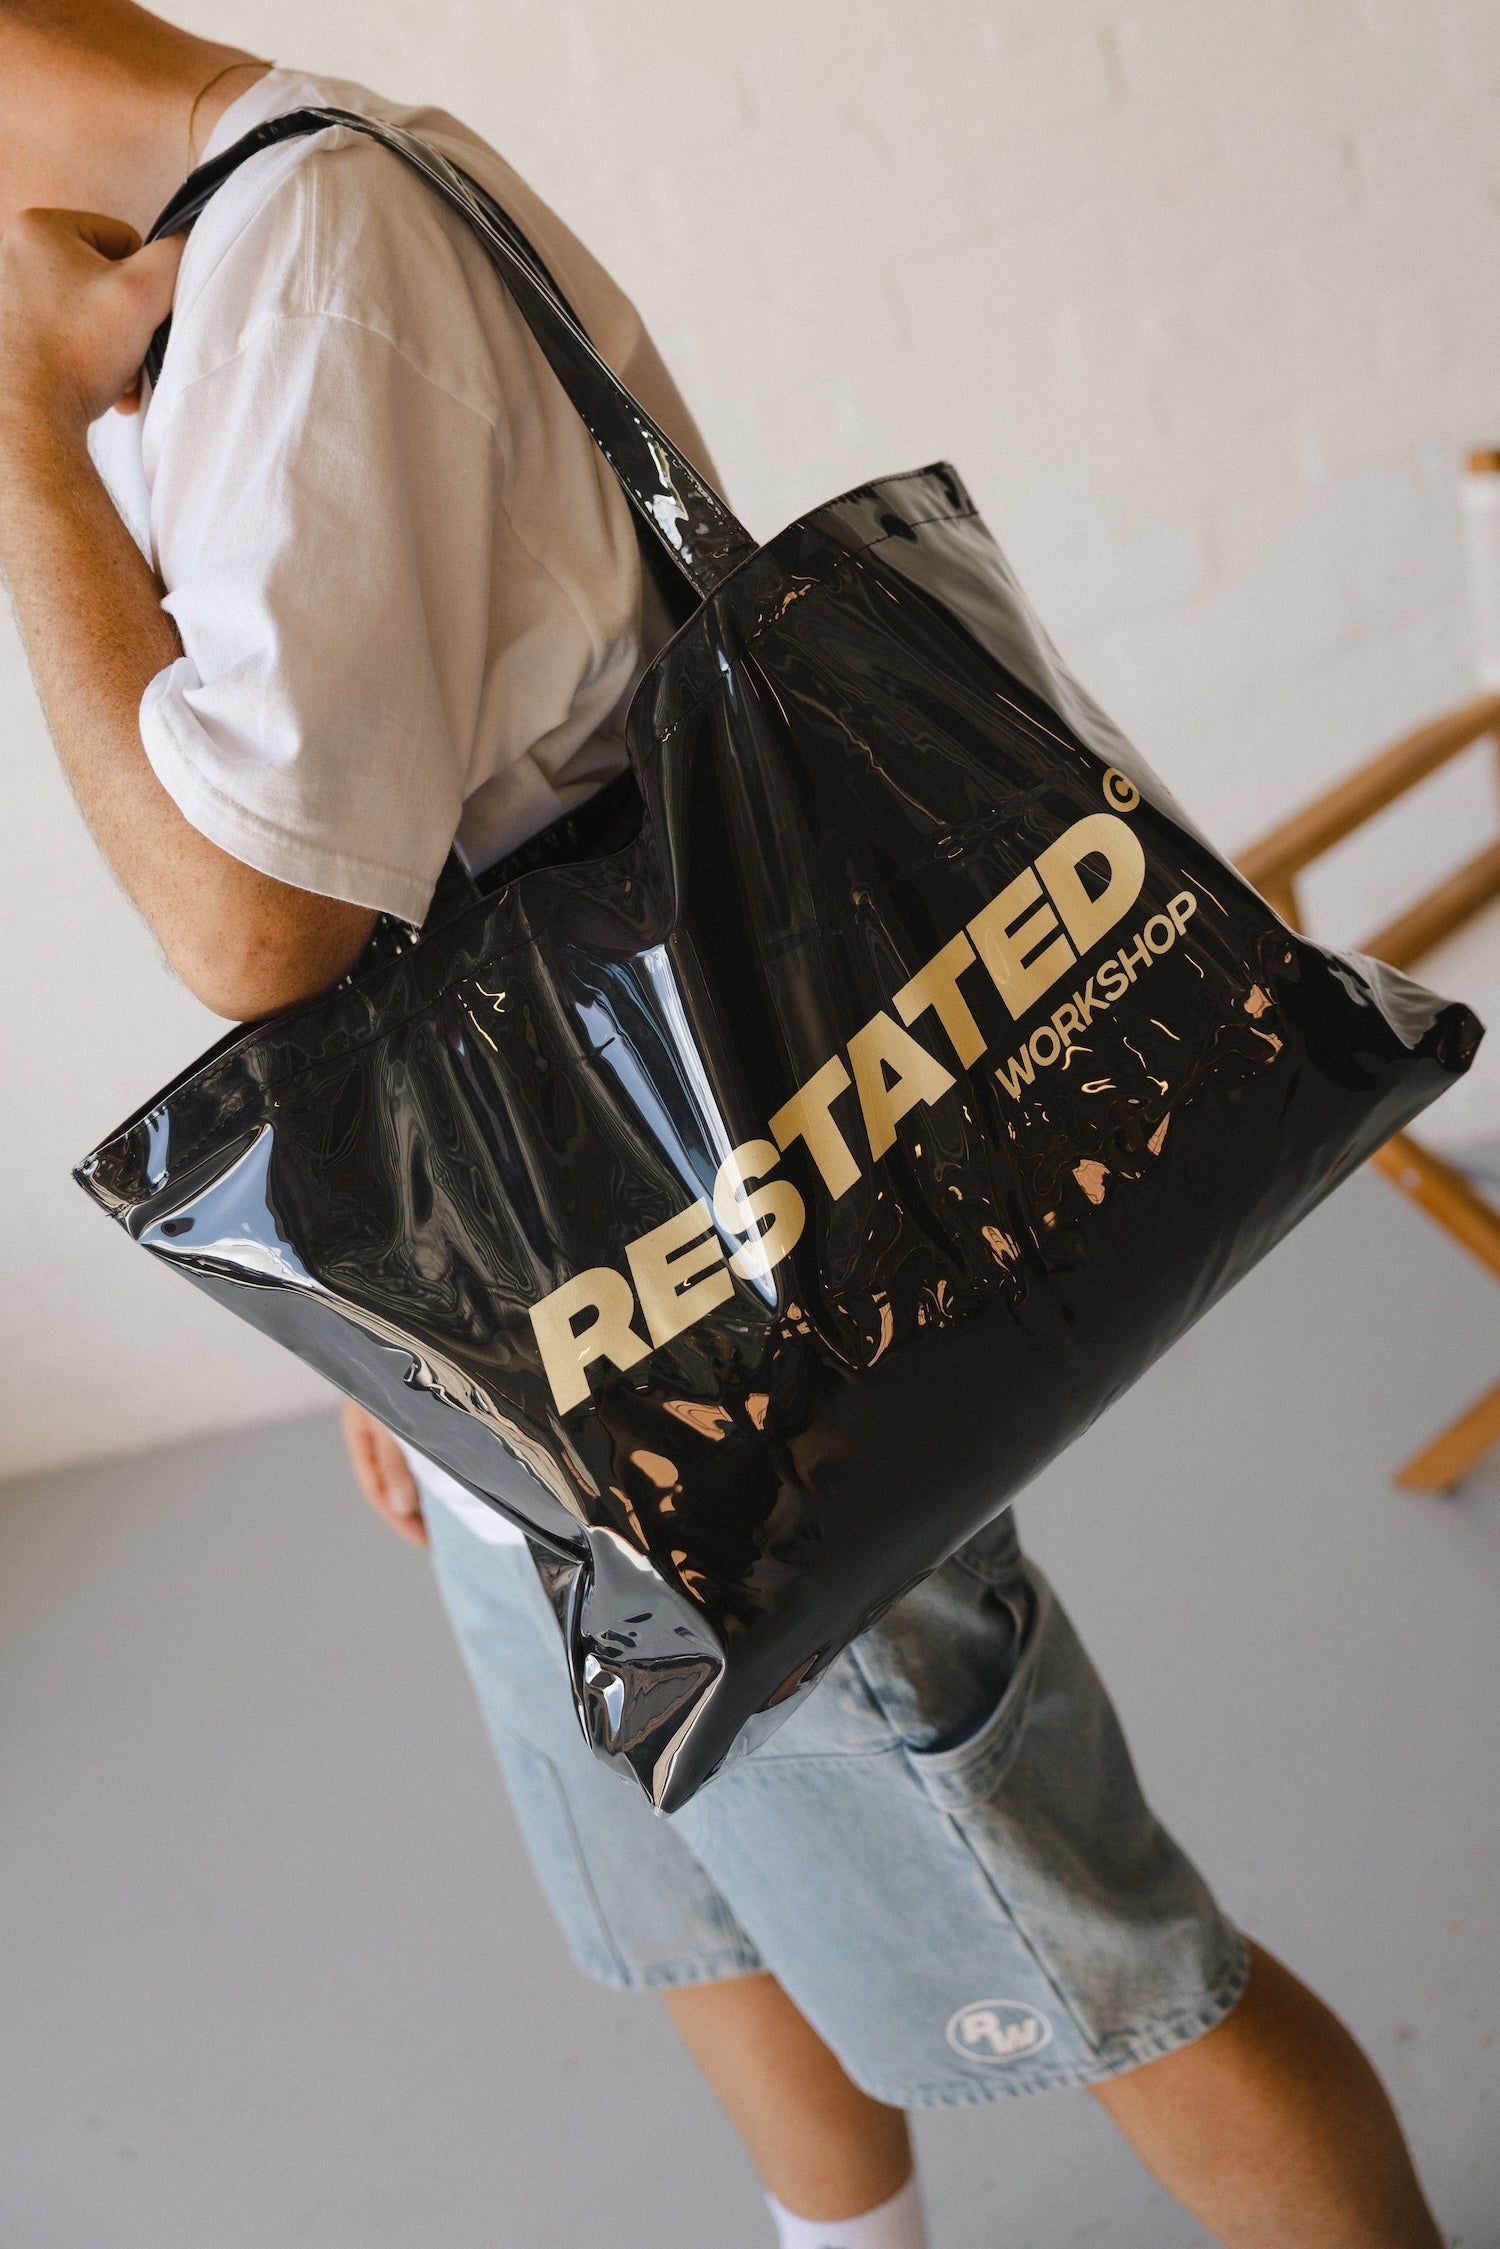 Restated Workshop PVC Tote Bag - Black